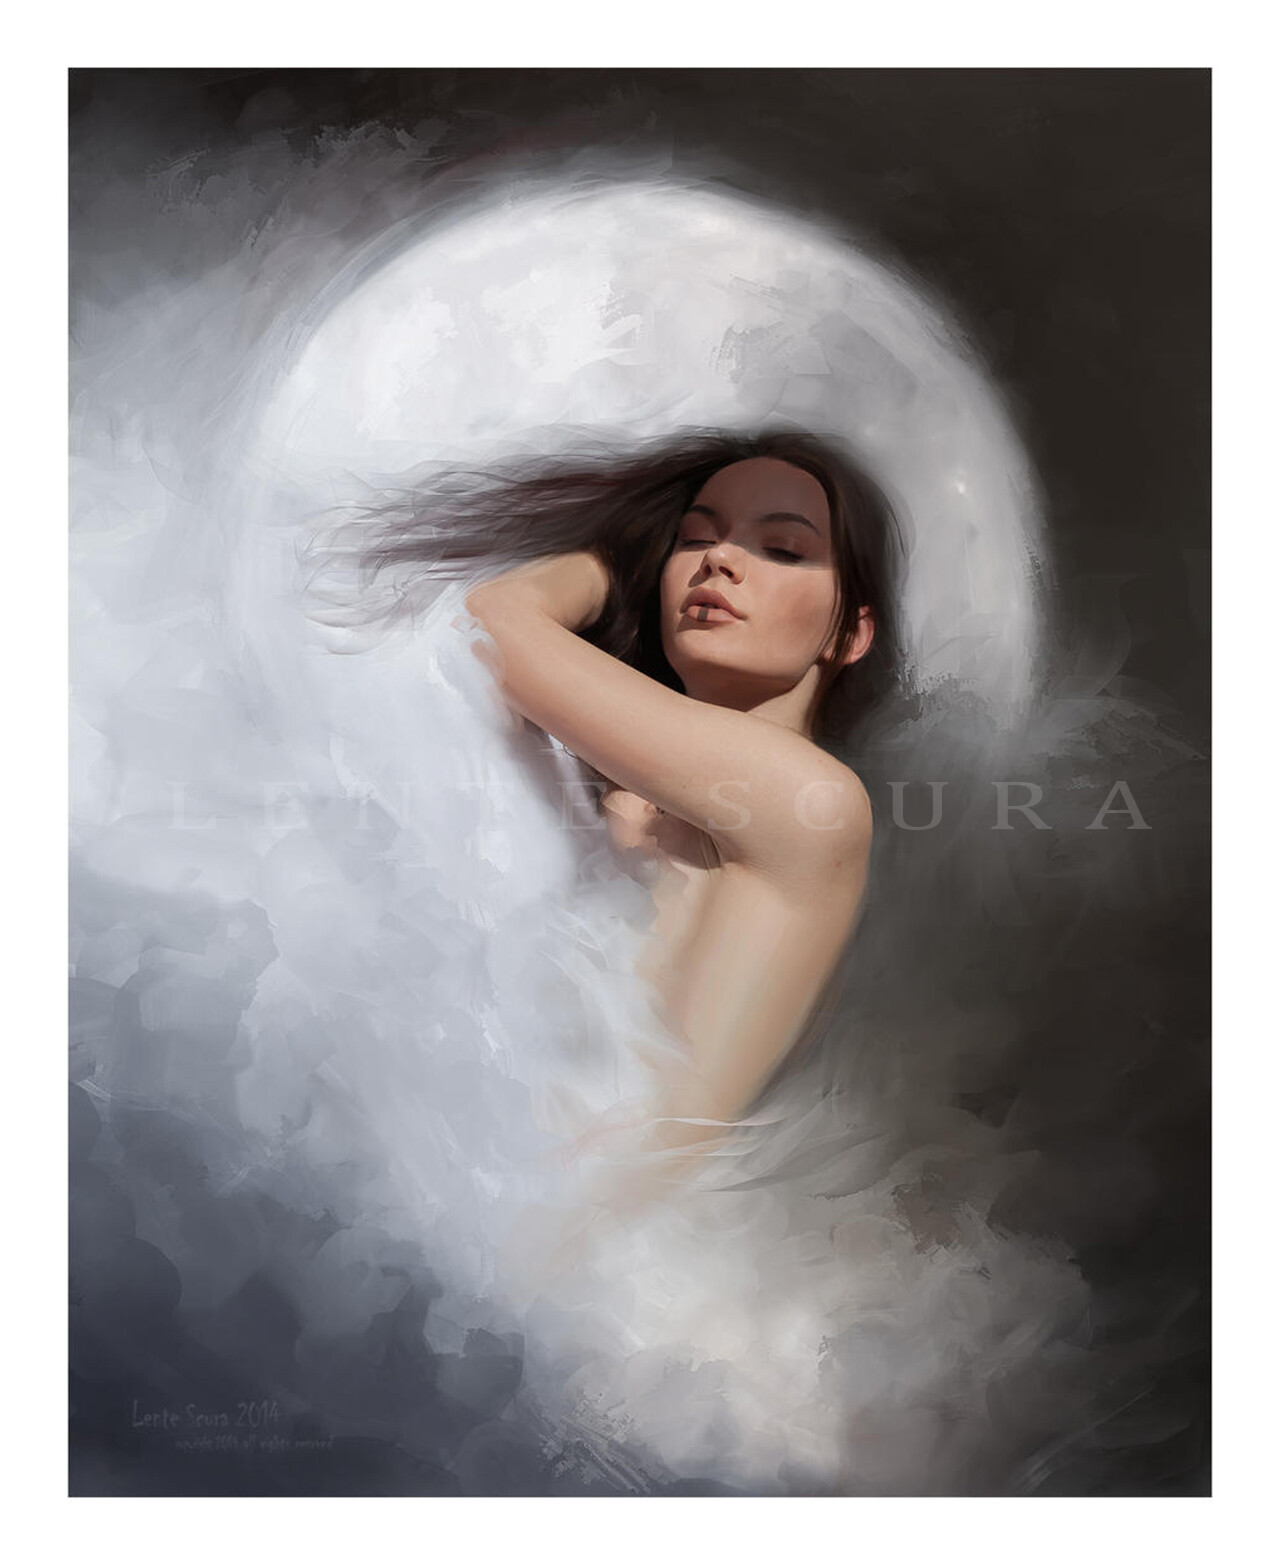 La Luna Insonne
Modello: Emilia Collaro
di Lente Scura
Diritto d'autore (copyright)